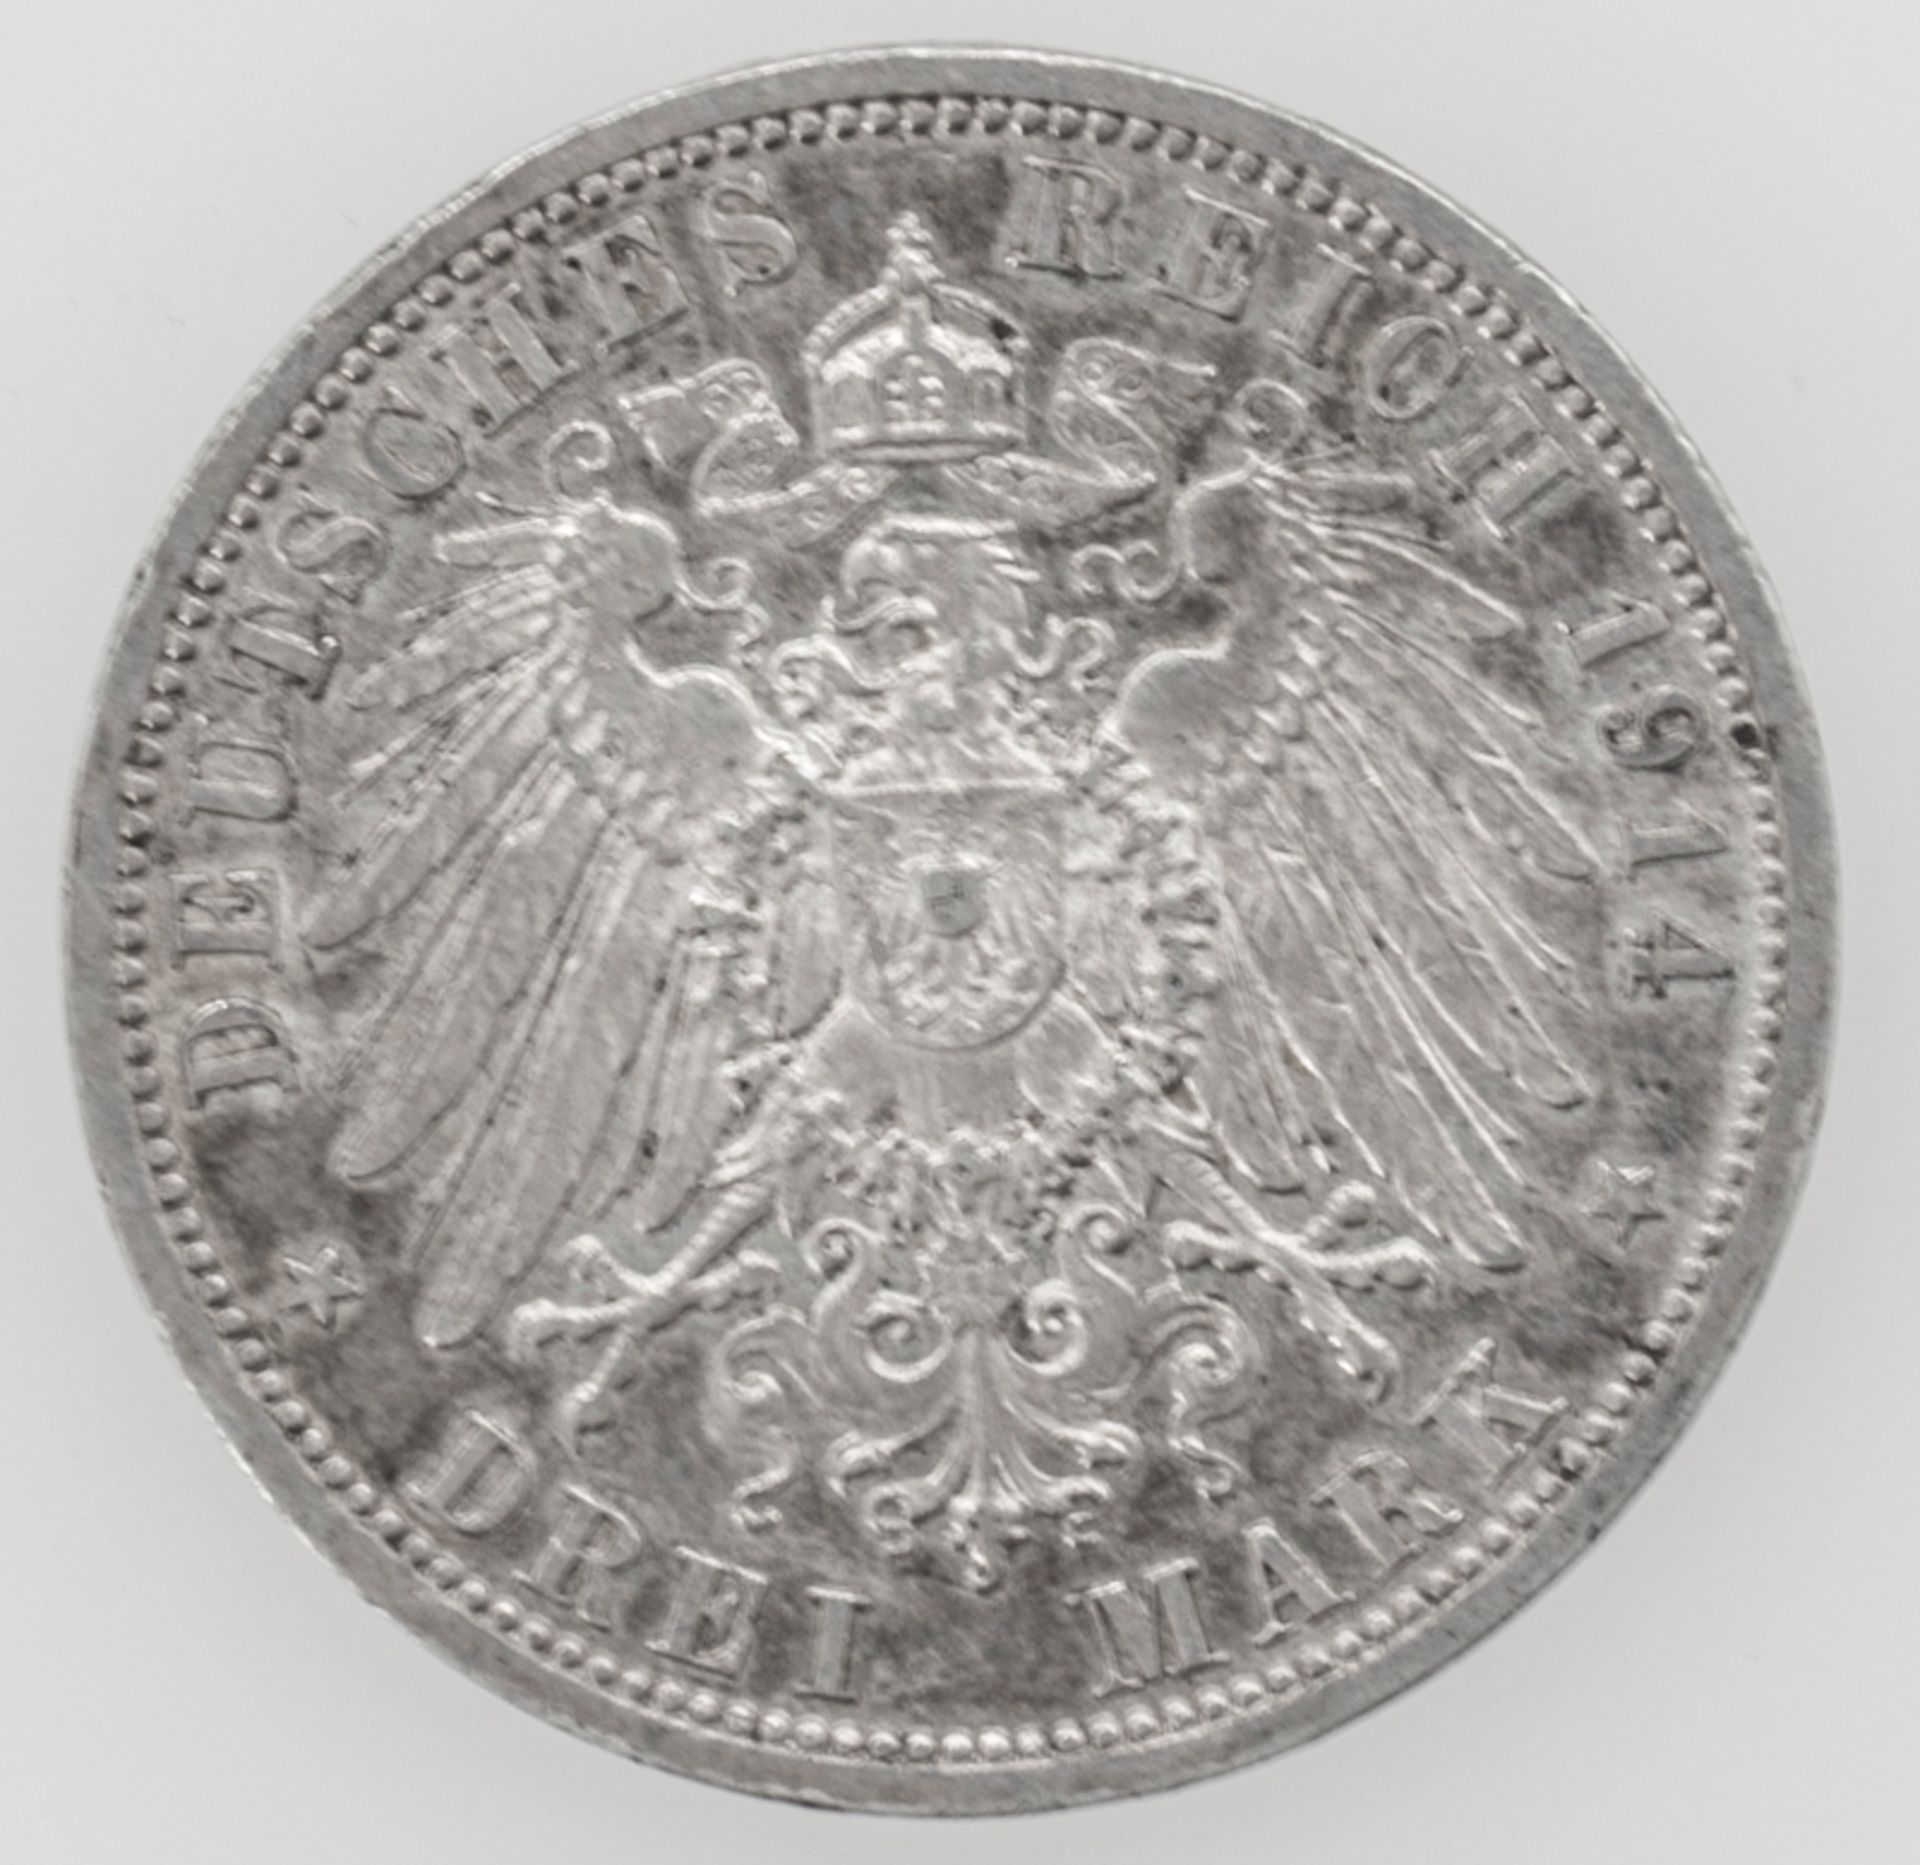 Deutsches Kaiserreich Preußen 1914, 3.- Mark - Silbermünze "Wilhelm II.". Erhaltung: ss. - Image 2 of 2